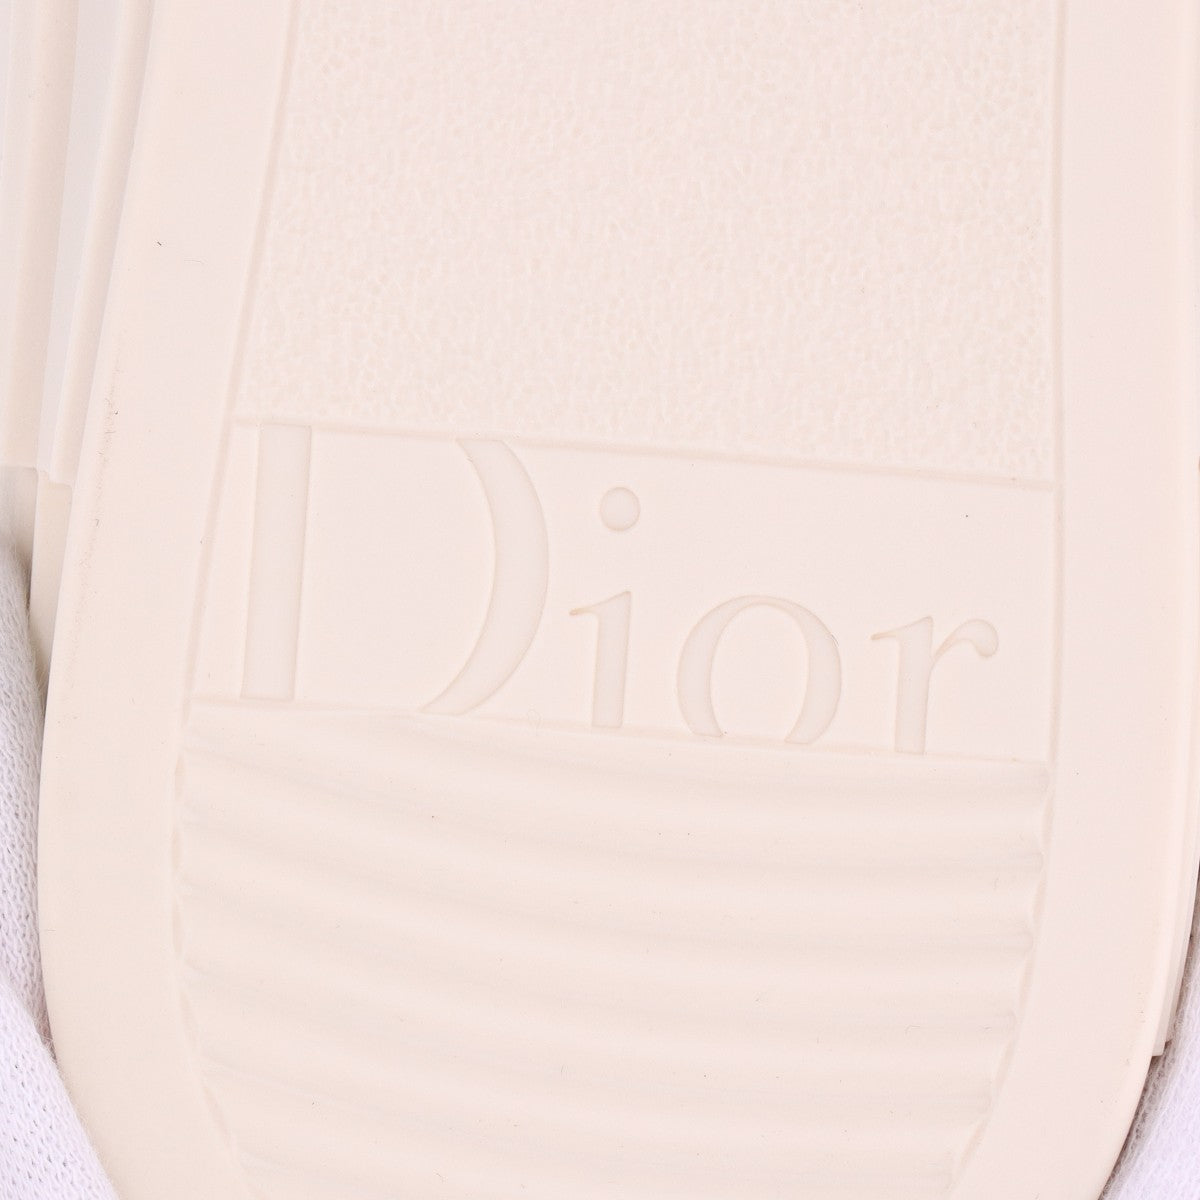 Dior  ERL Boar High Cut Sneaker EU37  Beige DC1022 Lovit Motif   Box Bag